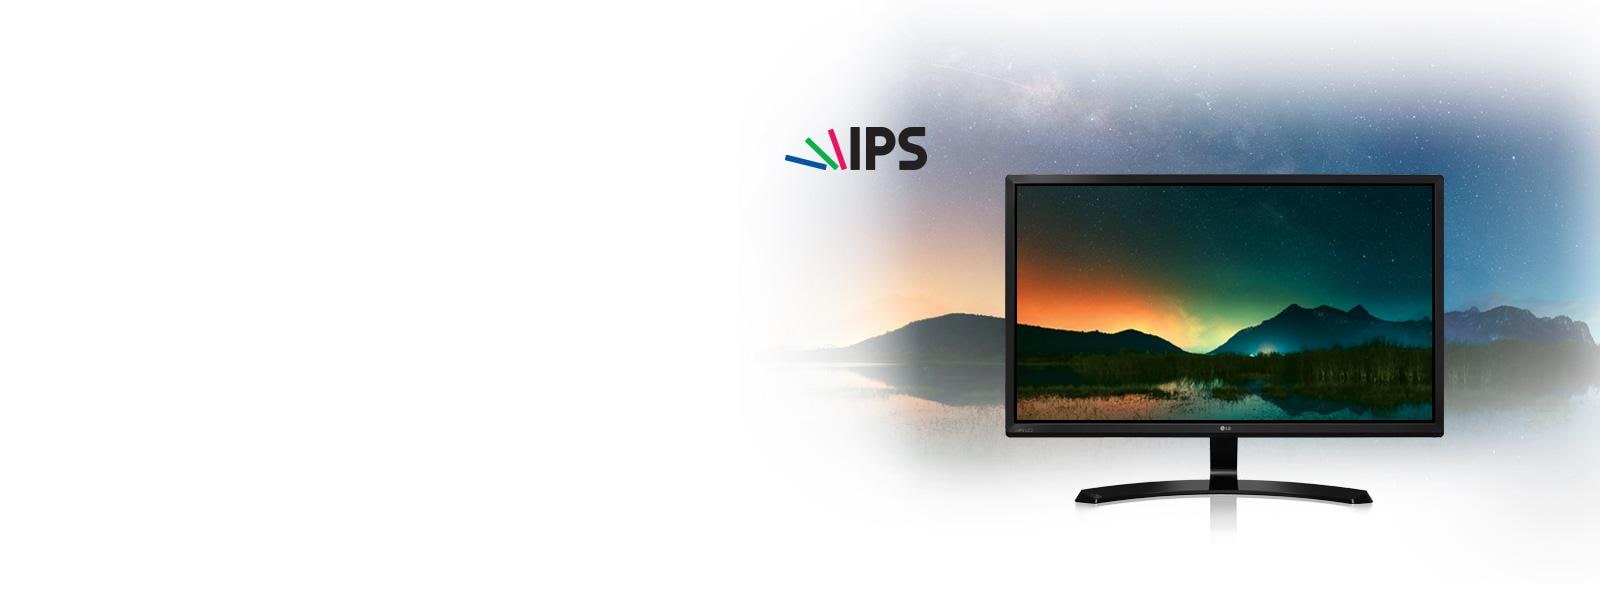 Full HD IPS Display